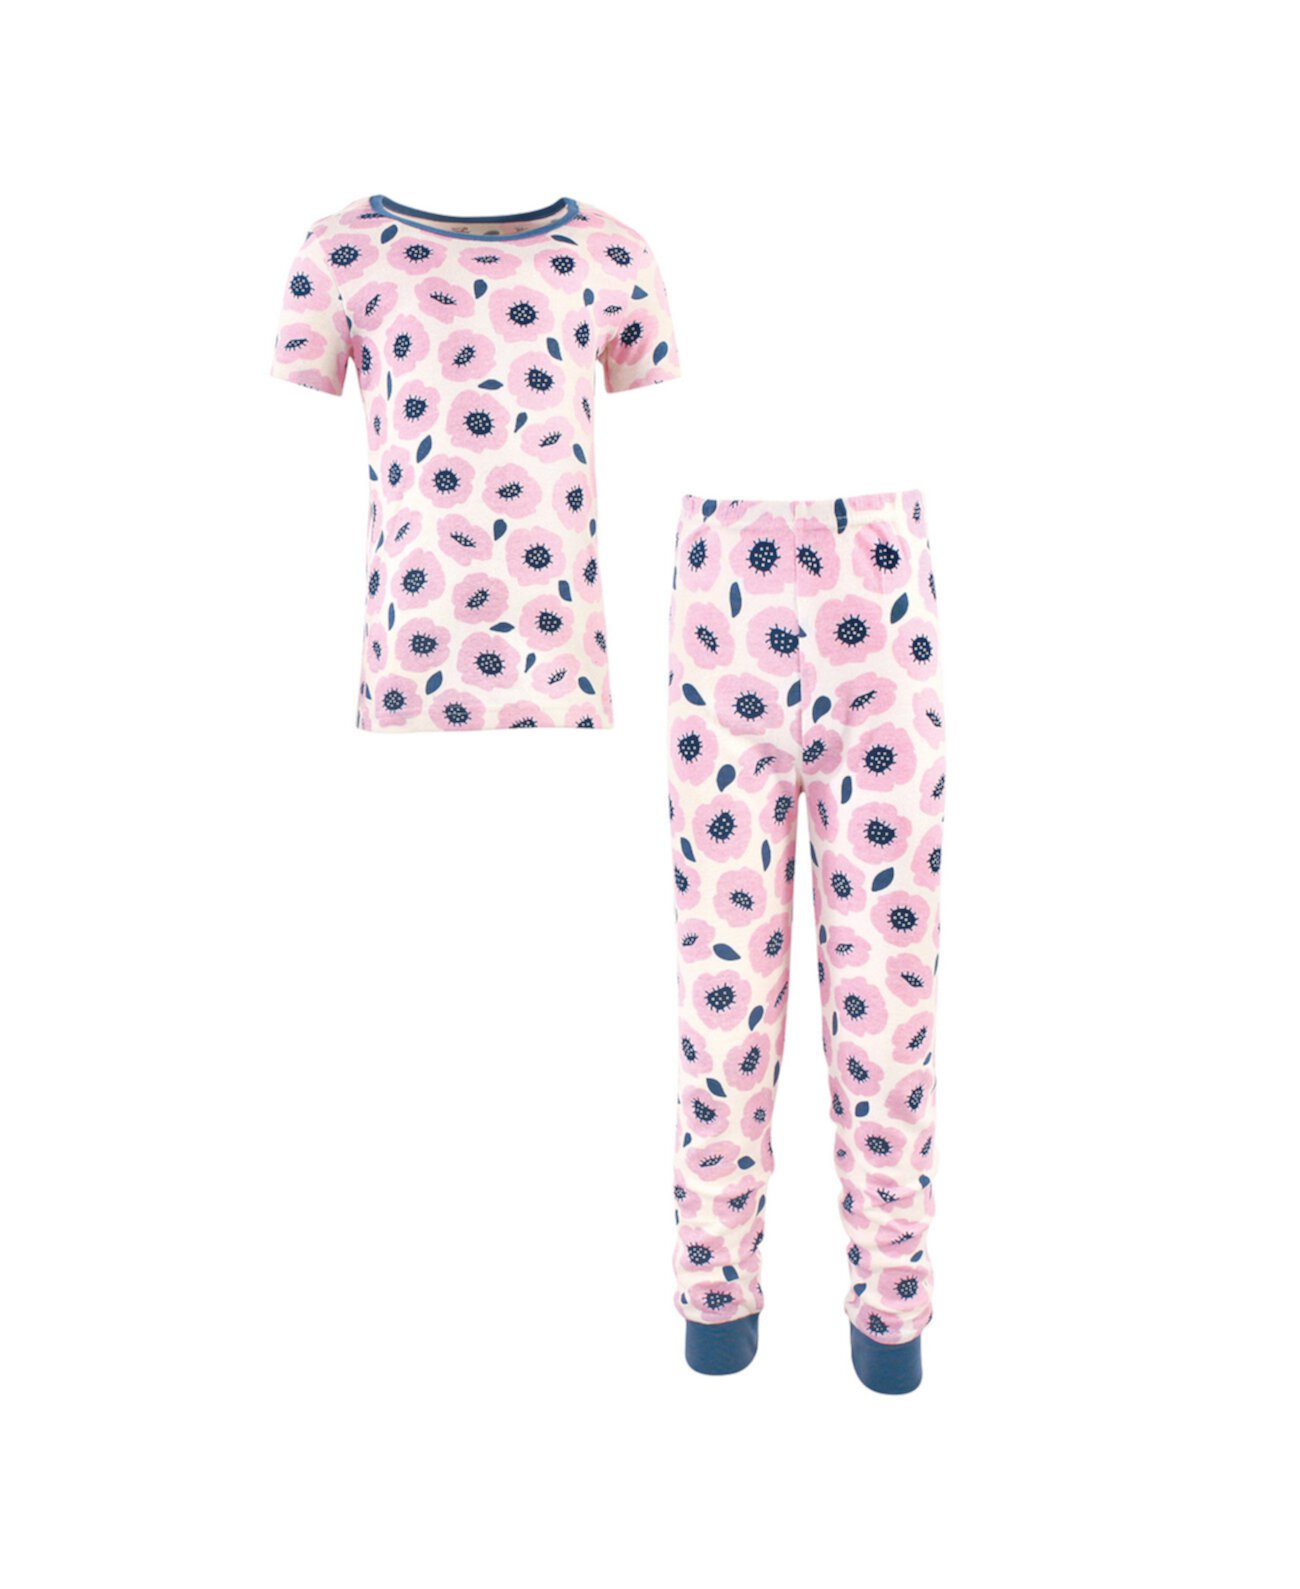 Облегающий комплект пижамы Blossoms для малышей, комплект из 2 шт. Touched by Nature